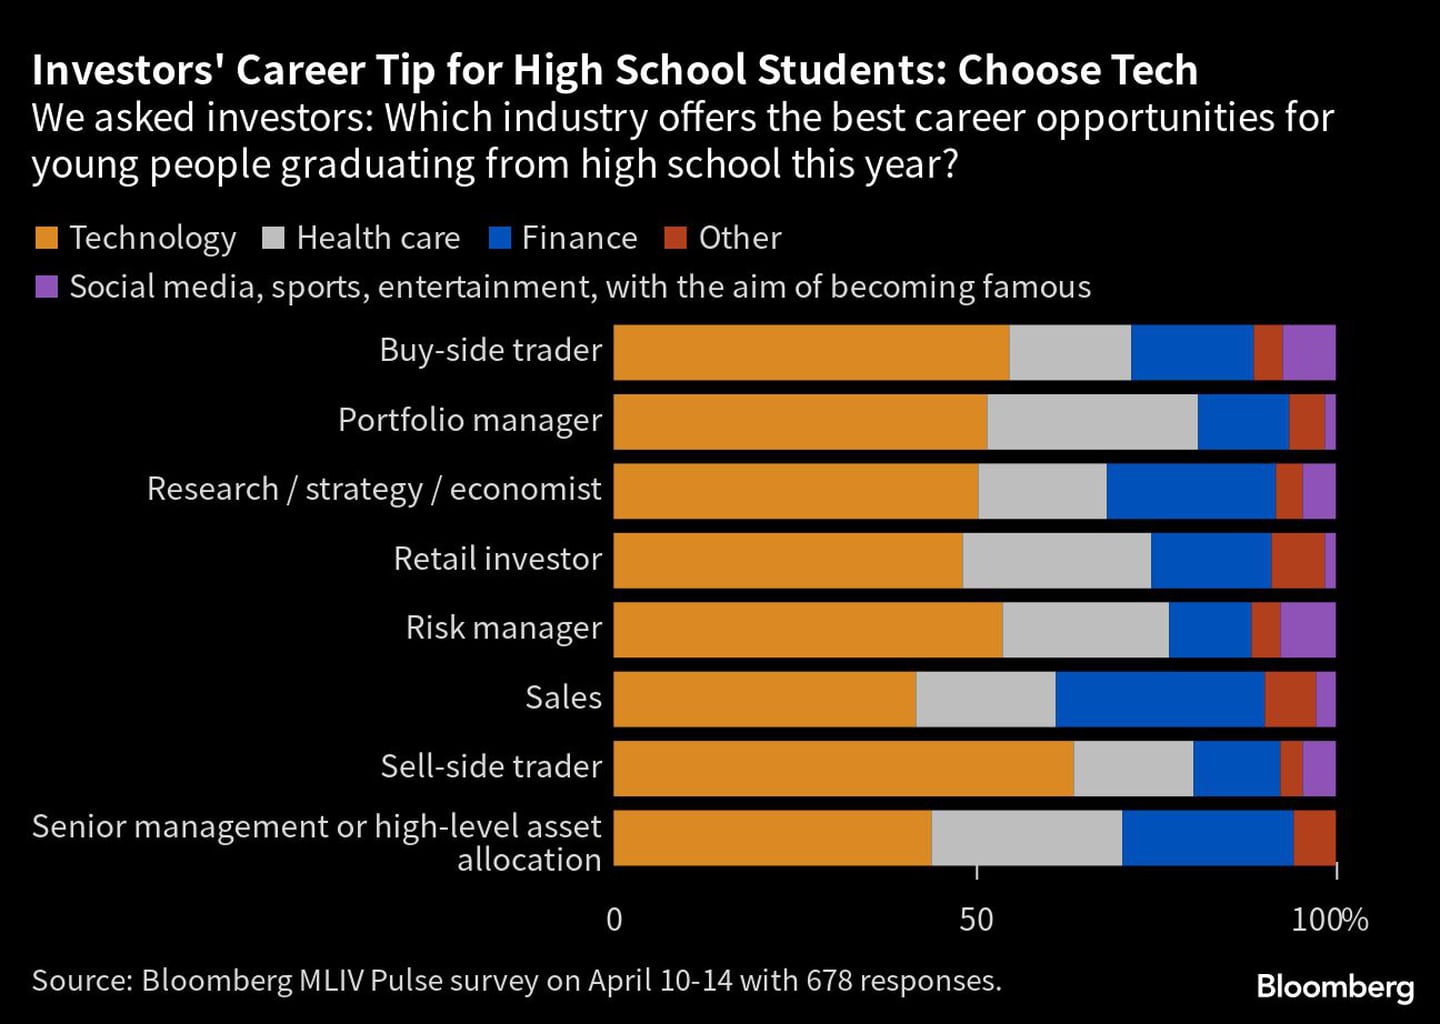 Consejo profesional de los inversores para los estudiantes de secundaria: Elige tecnología | Preguntamos a los inversores: ¿Qué sector ofrece las mejores oportunidades profesionales para los jóvenes que terminan secundaria este año?dfd